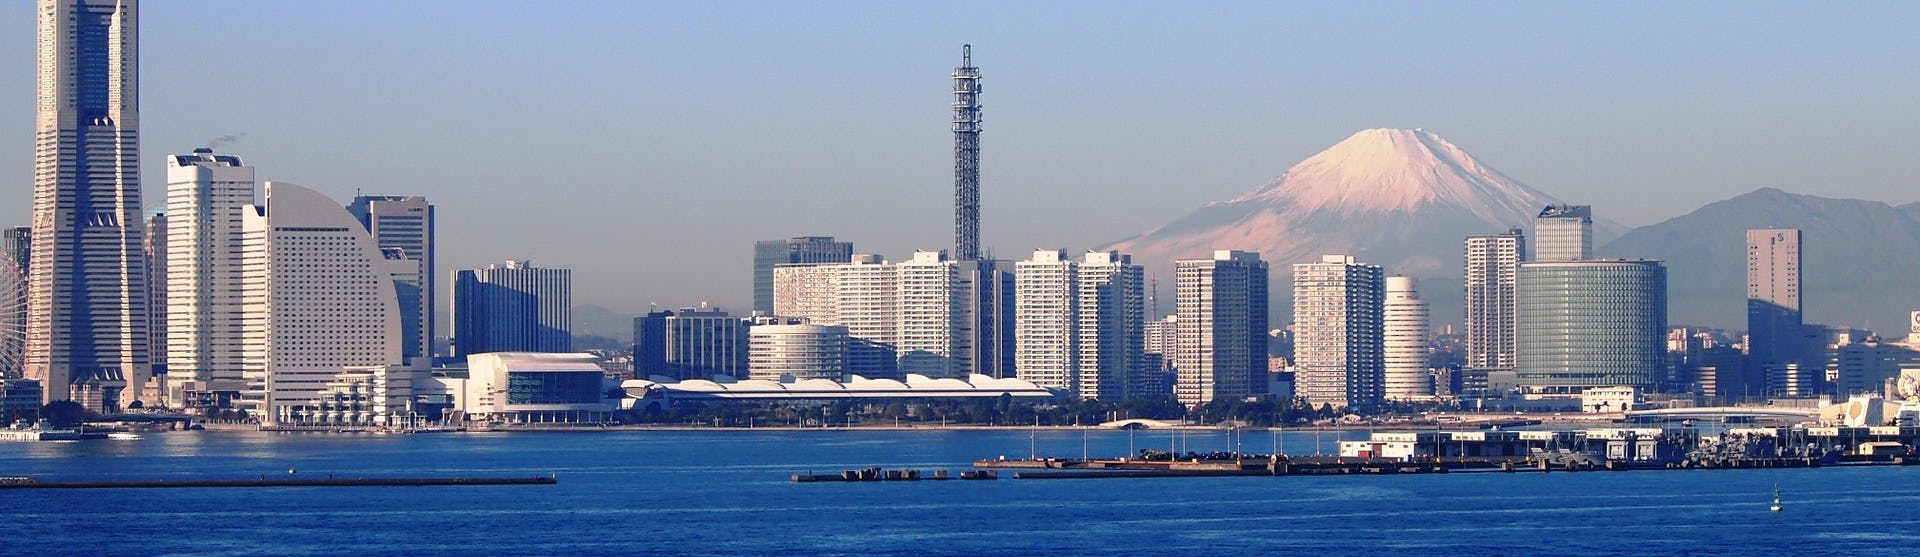 Bild på Yokohama med havet, höga byggnader och Mount Fuji i bakgrunden.